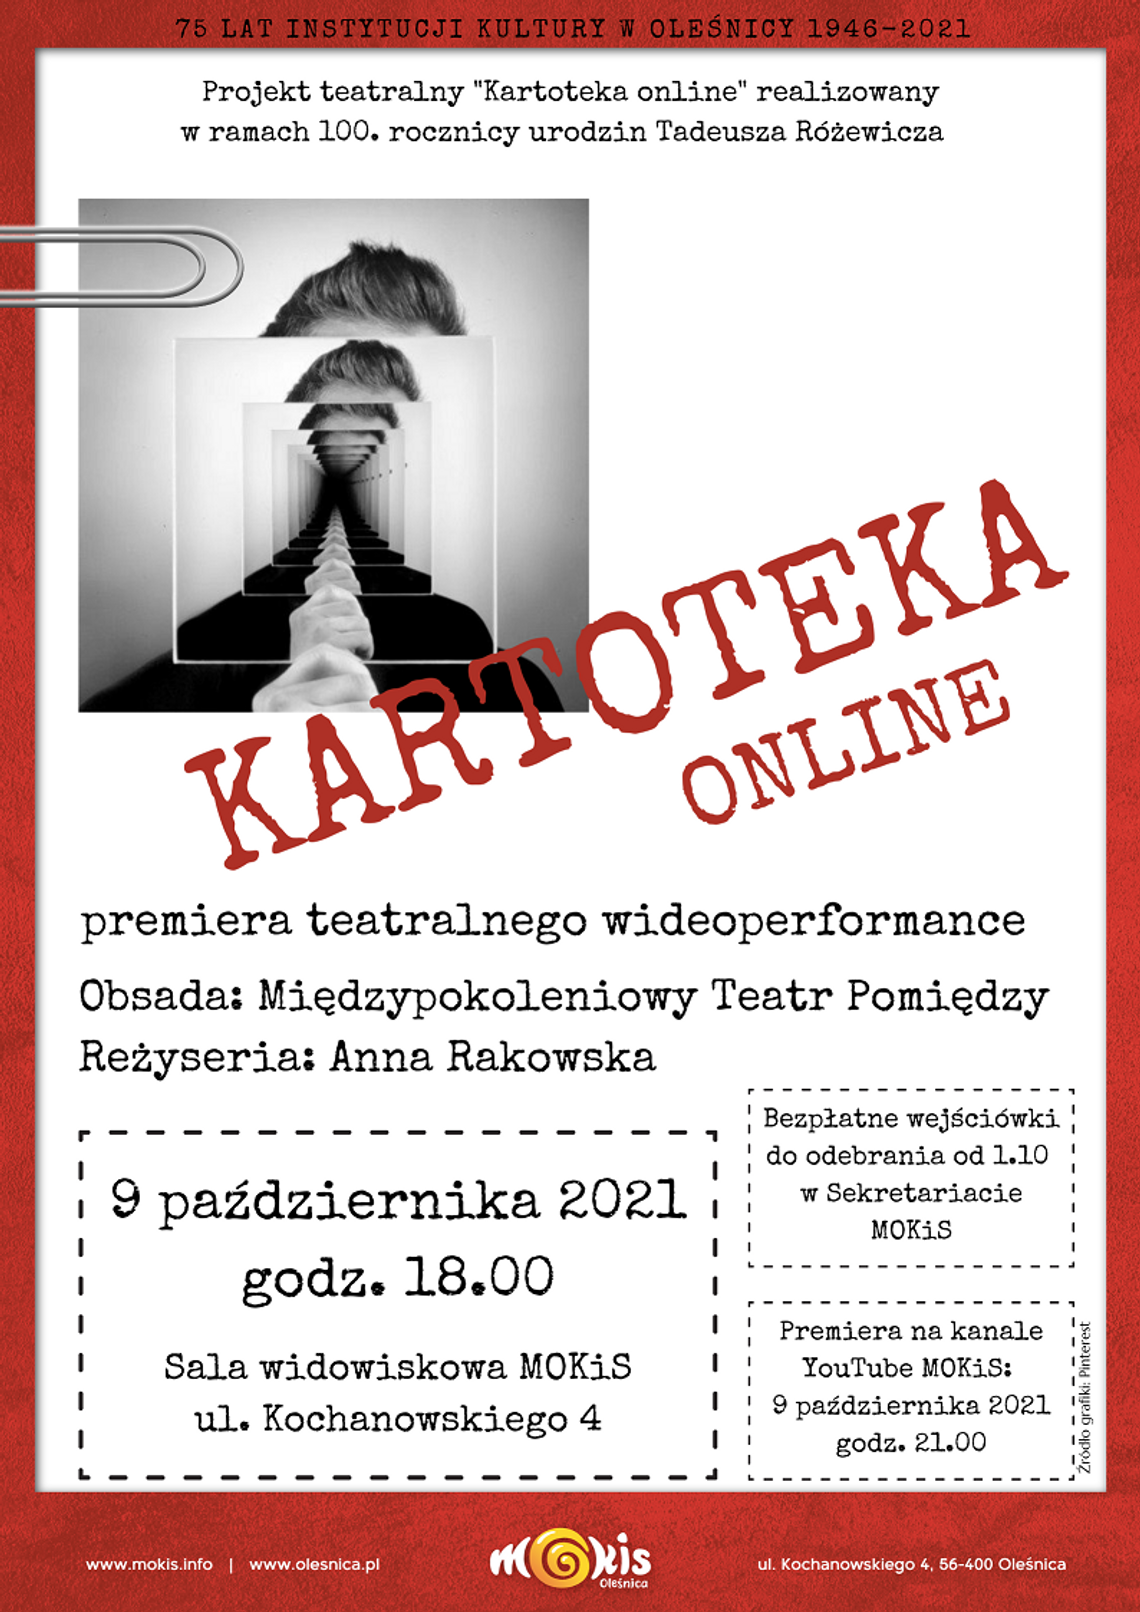 Premiera teatralnego wideoperformance "Kartoteka" online w 100. rocznicę urodzin Tadeusza Różewicza